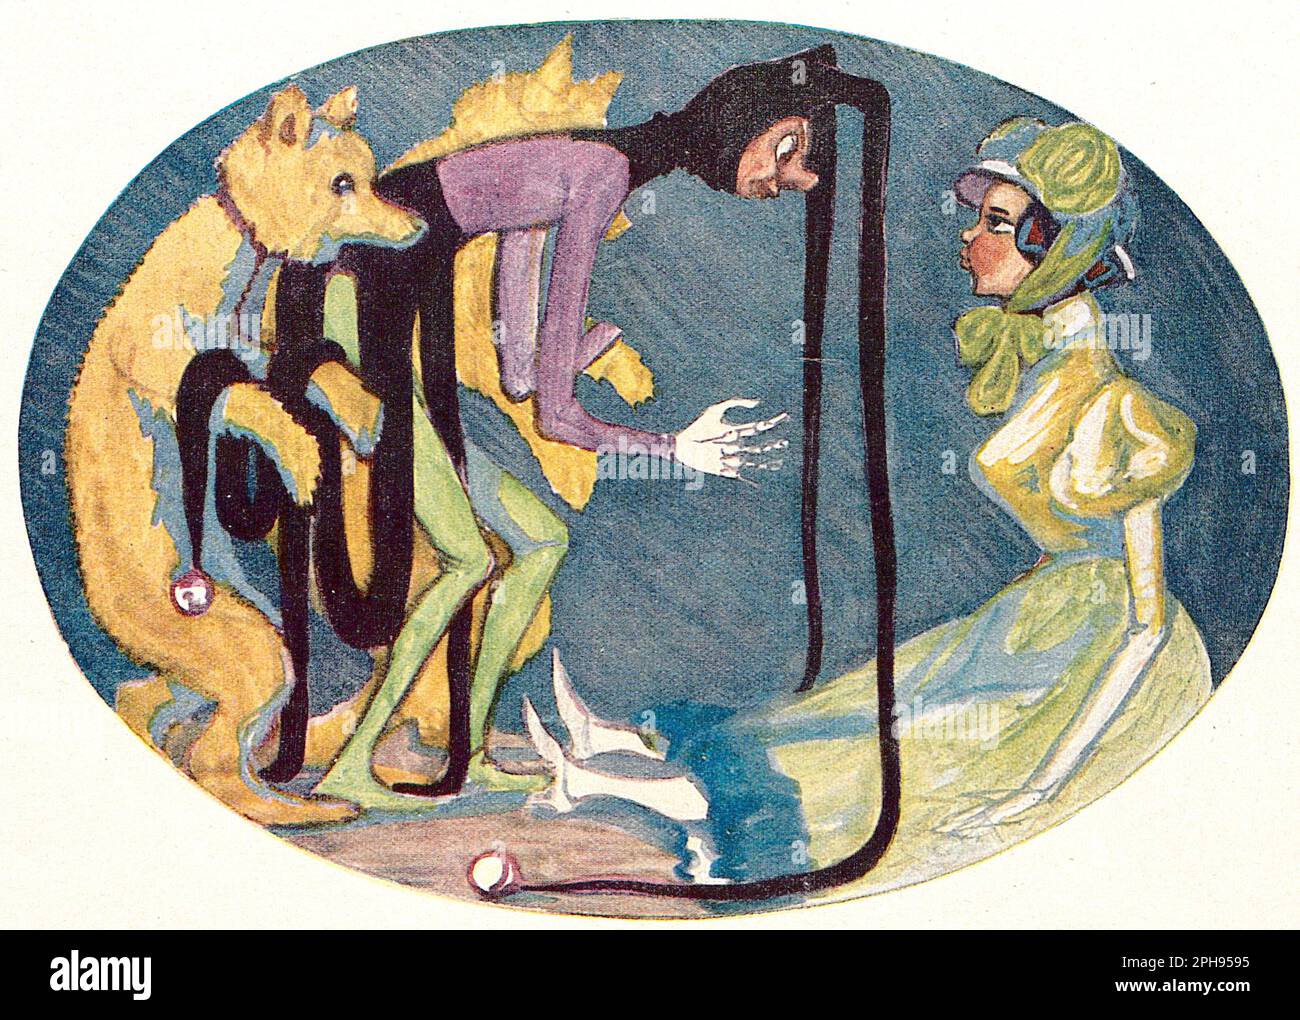 August Geigenberger - Fairy Story - 1924 - du journal hebdomadaire de l'art et de la vie 'Jugend' n° 45 Banque D'Images